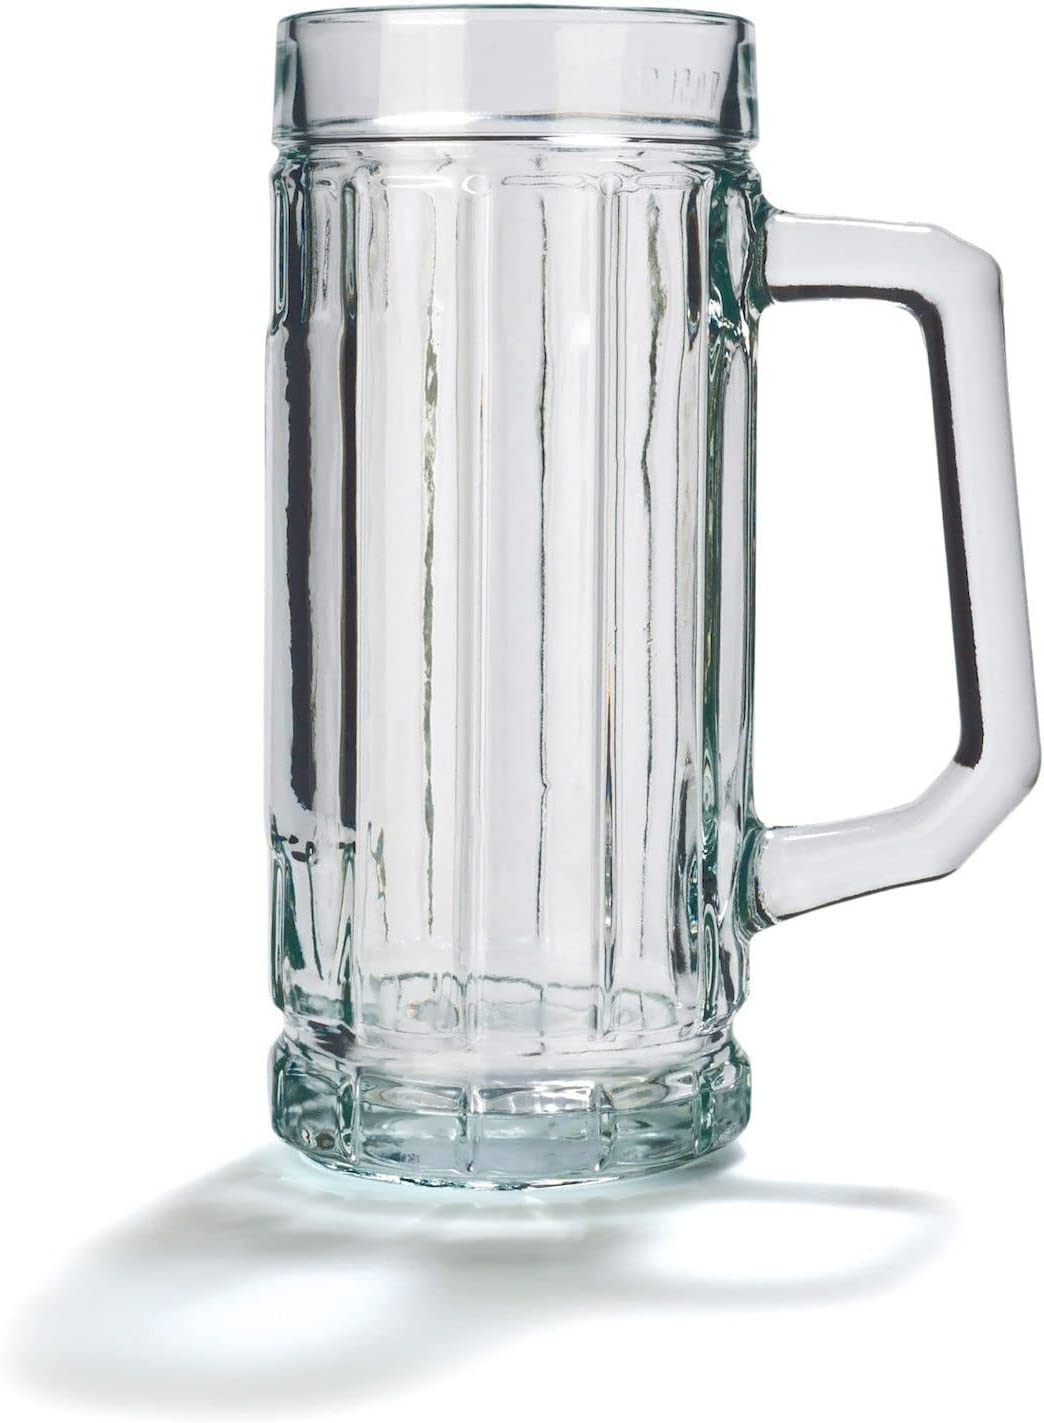 Stölzle Oberglas Gambrinus Beer Mug with Oversized / Set of 6 Beer Mugs 0.5 Litres / Sturdy Beer Jug / Beer Glasses 0.5 Litres Made of Soda Lime Glass / Beer Mugs 0.5 L Dishwasher Safe